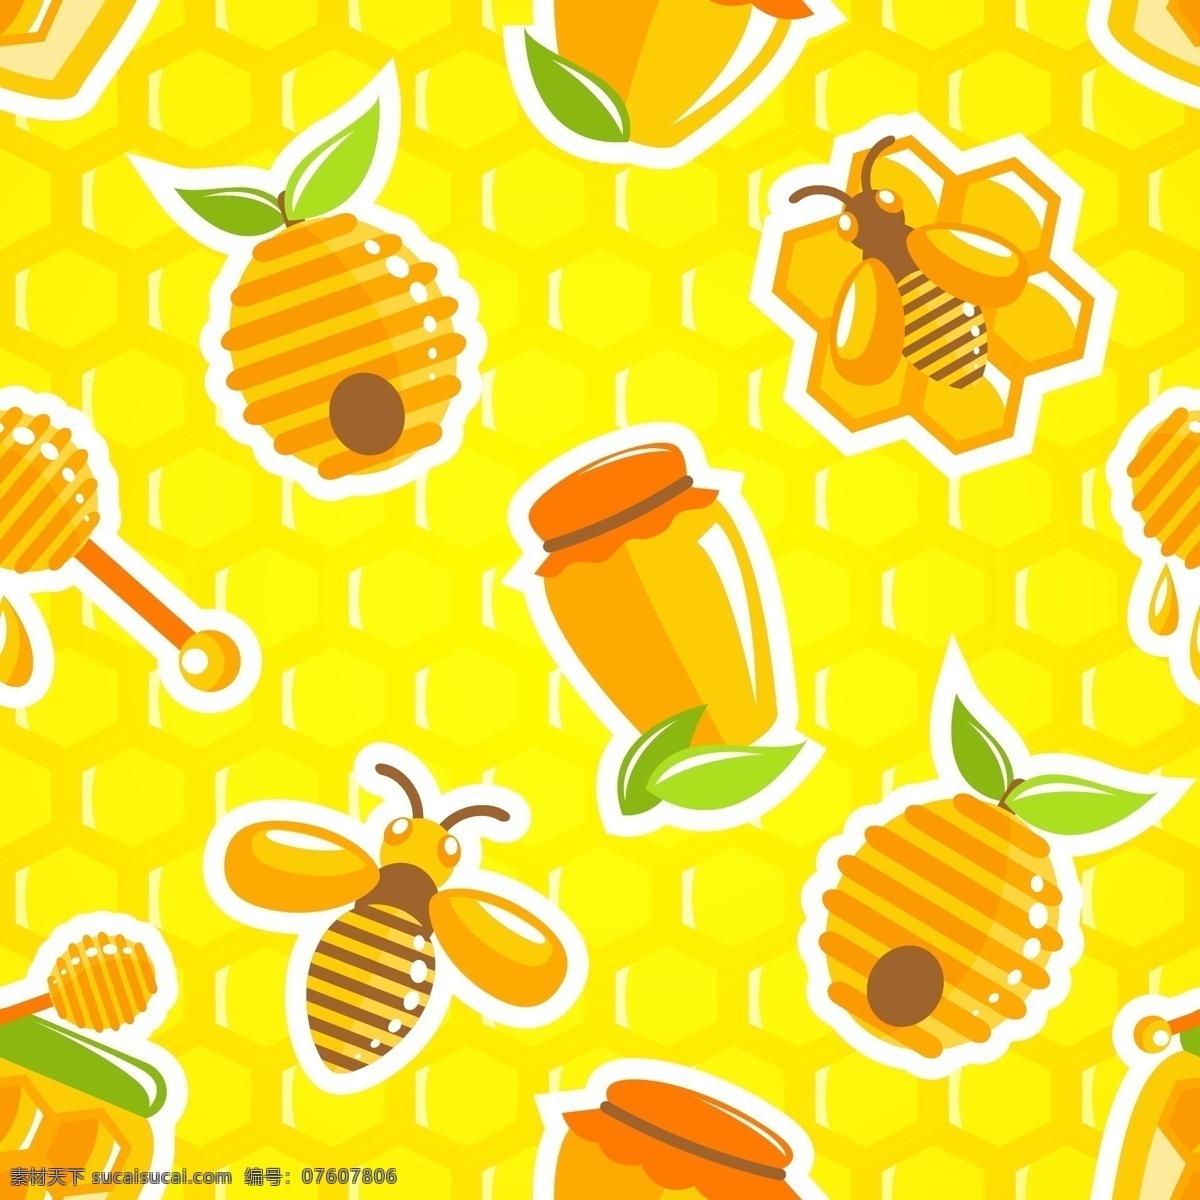 蜜蜂图片 蜜蜂 蜂蜜 昆虫 手绘 插画 ai矢量